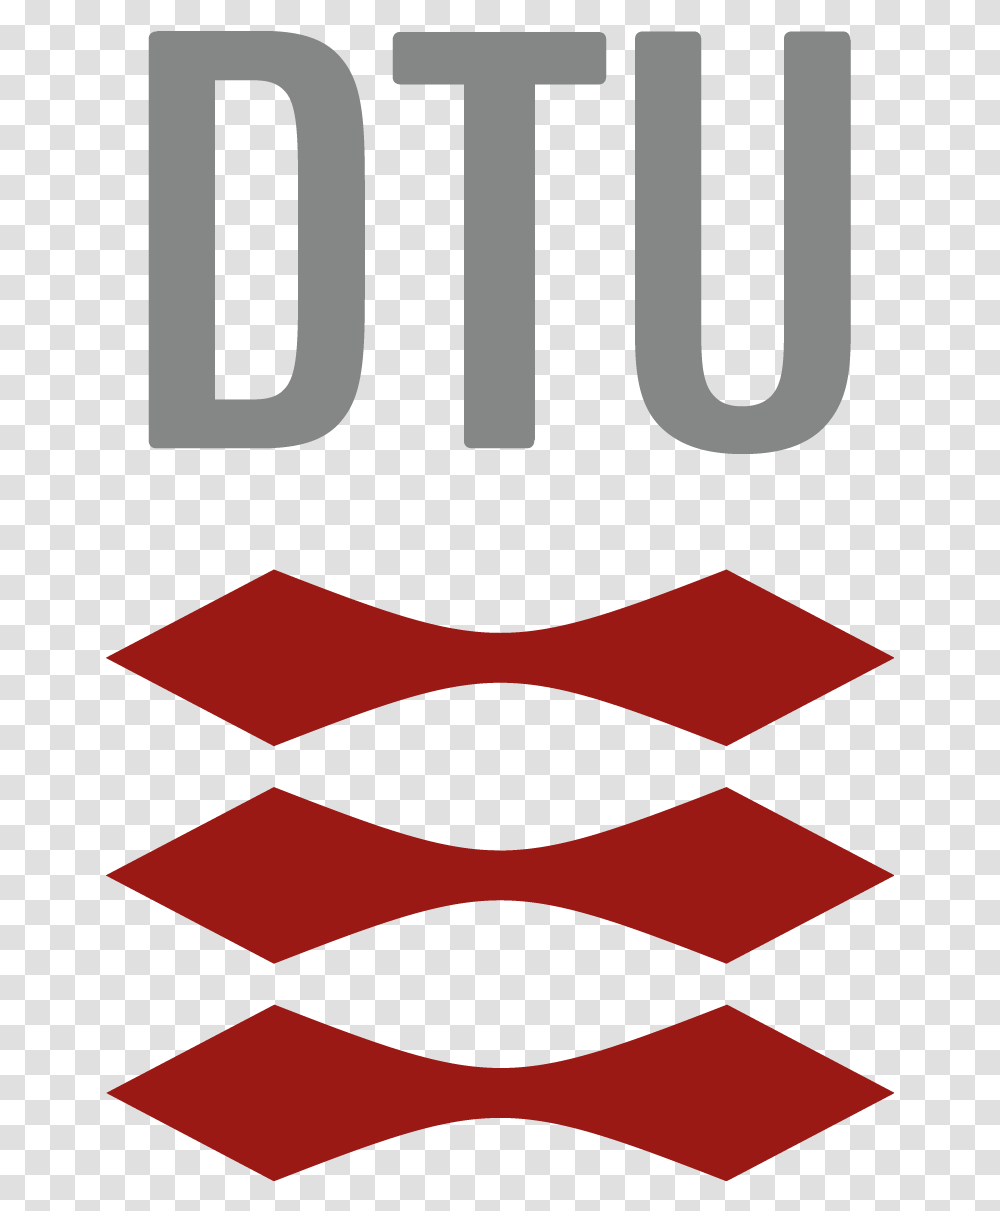 Dtu Logo Danmarks Tekniske Universitet Logos University Denmark Technical University Logo, Label, Text, Word, Rug Transparent Png